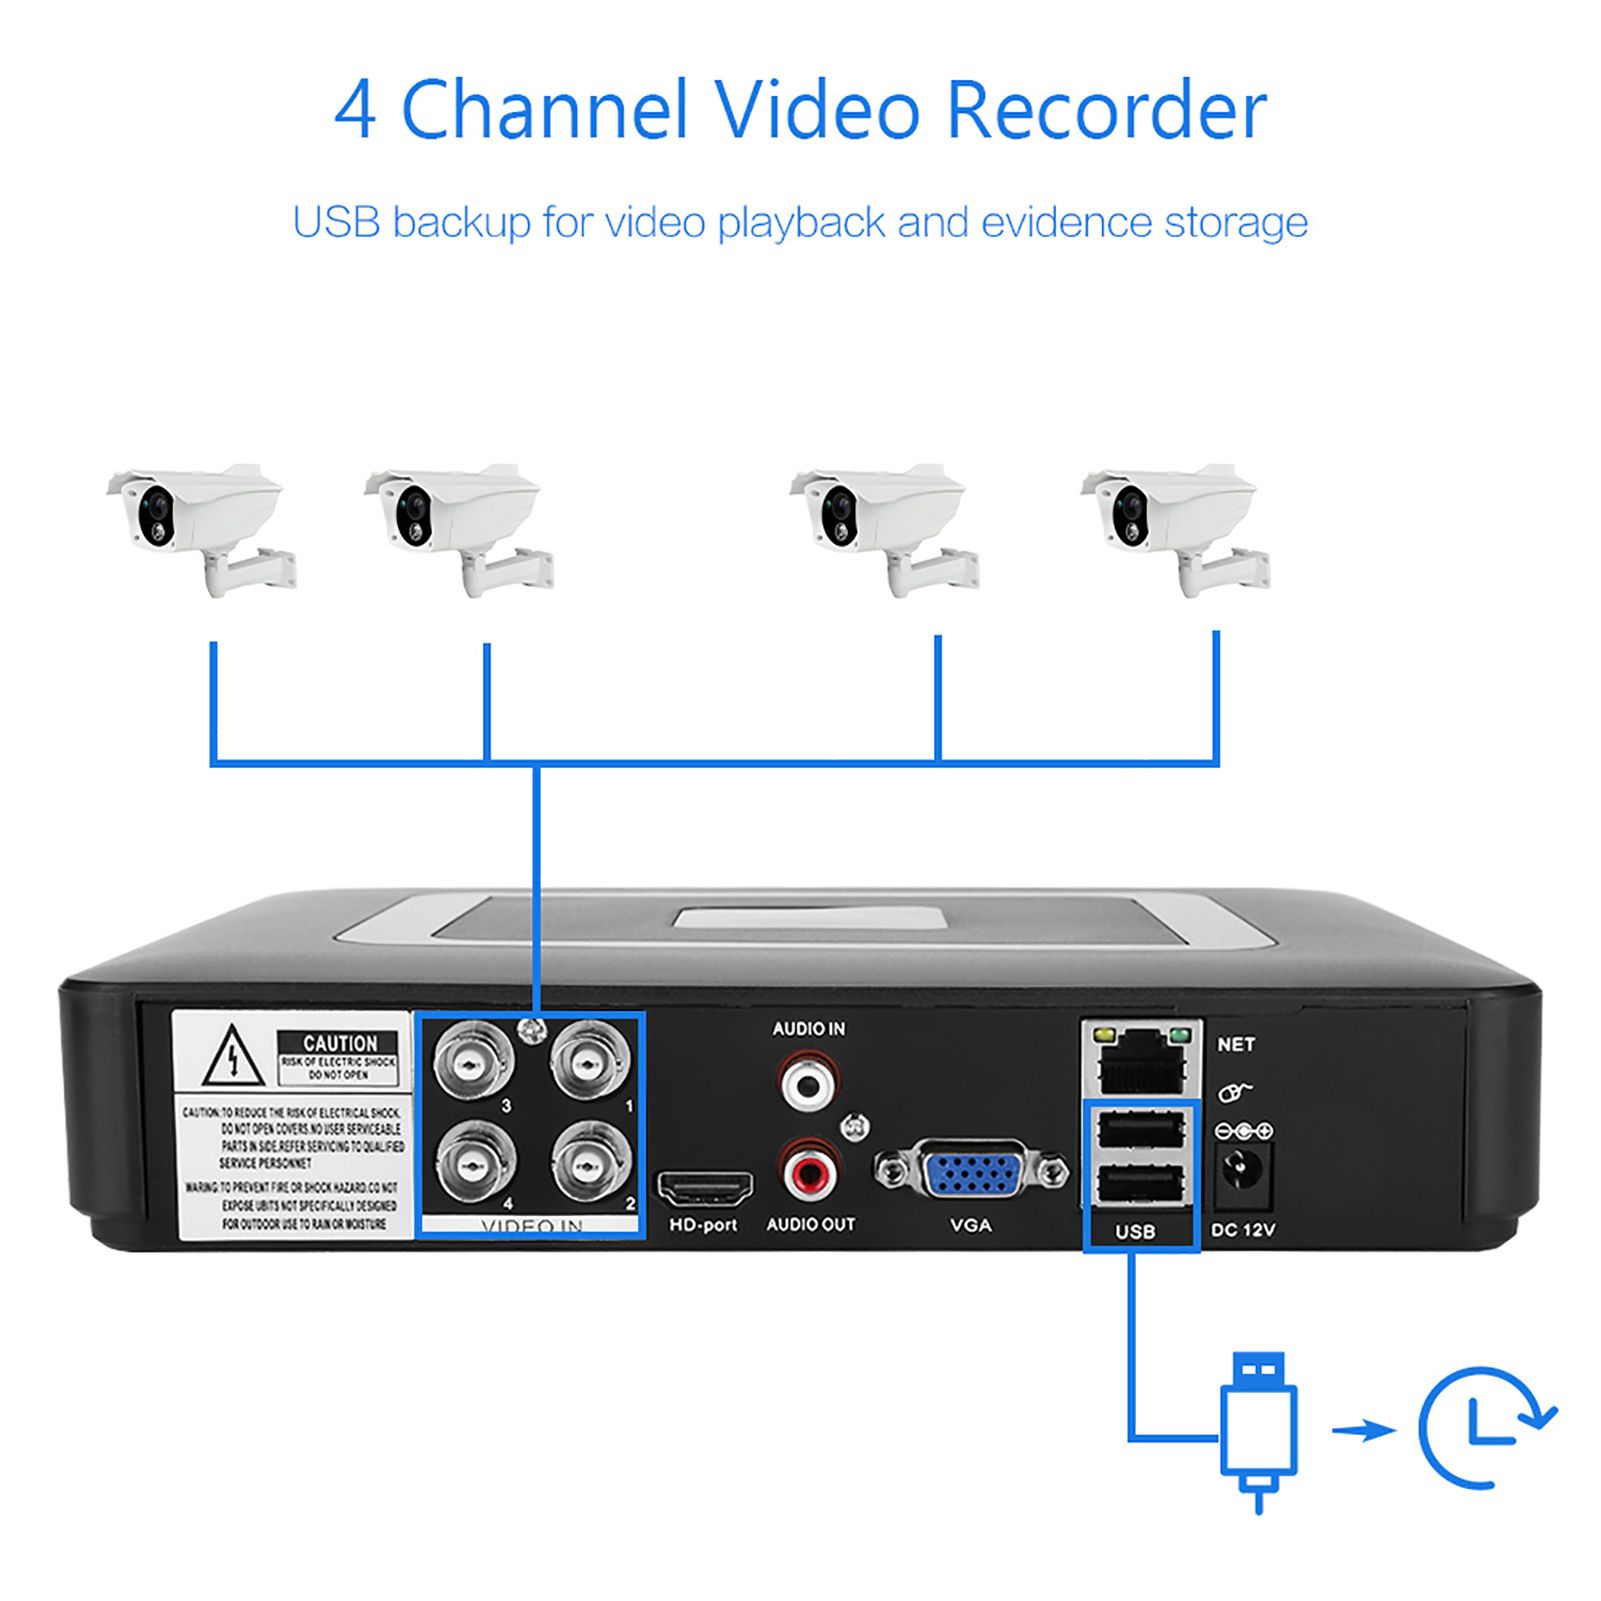 Регистратора 100. NVR. Оборудование для видеонаблюдения. HVR 4.0. Ld100 регистратор.